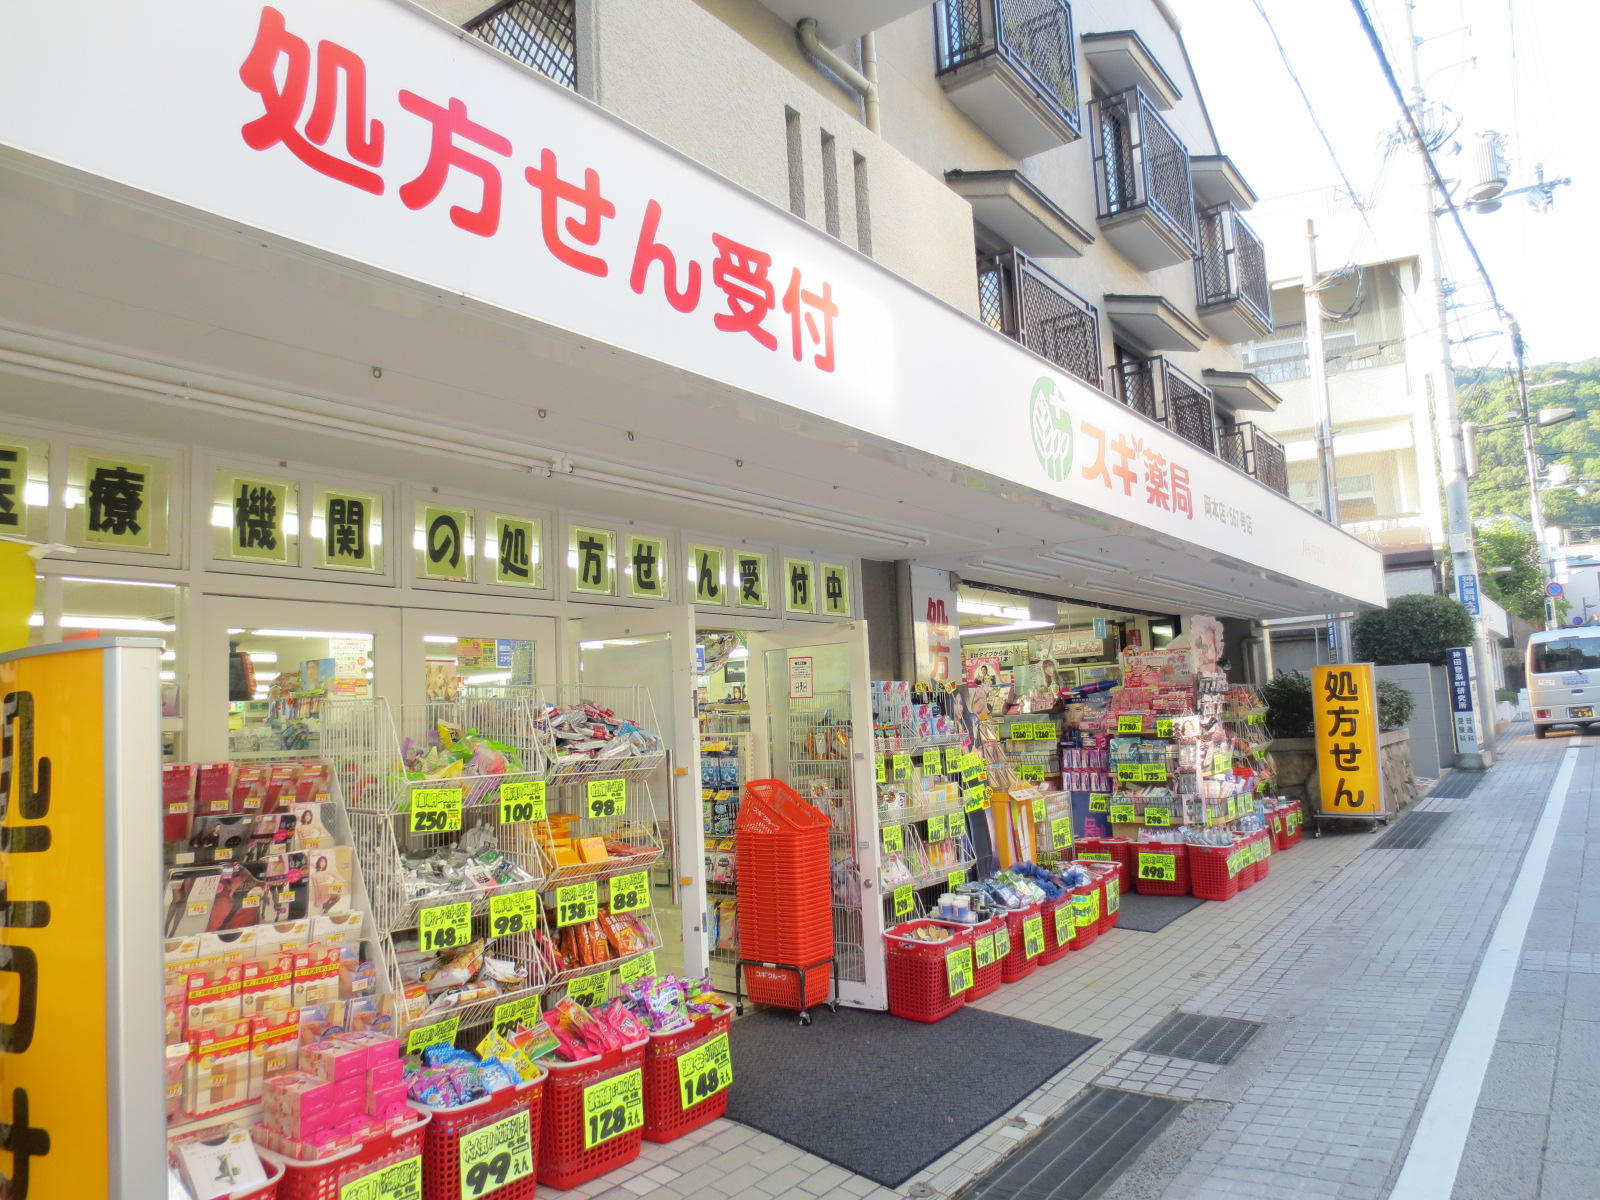 Dorakkusutoa. Cedar pharmacy Okamoto shop 677m until (drugstore)